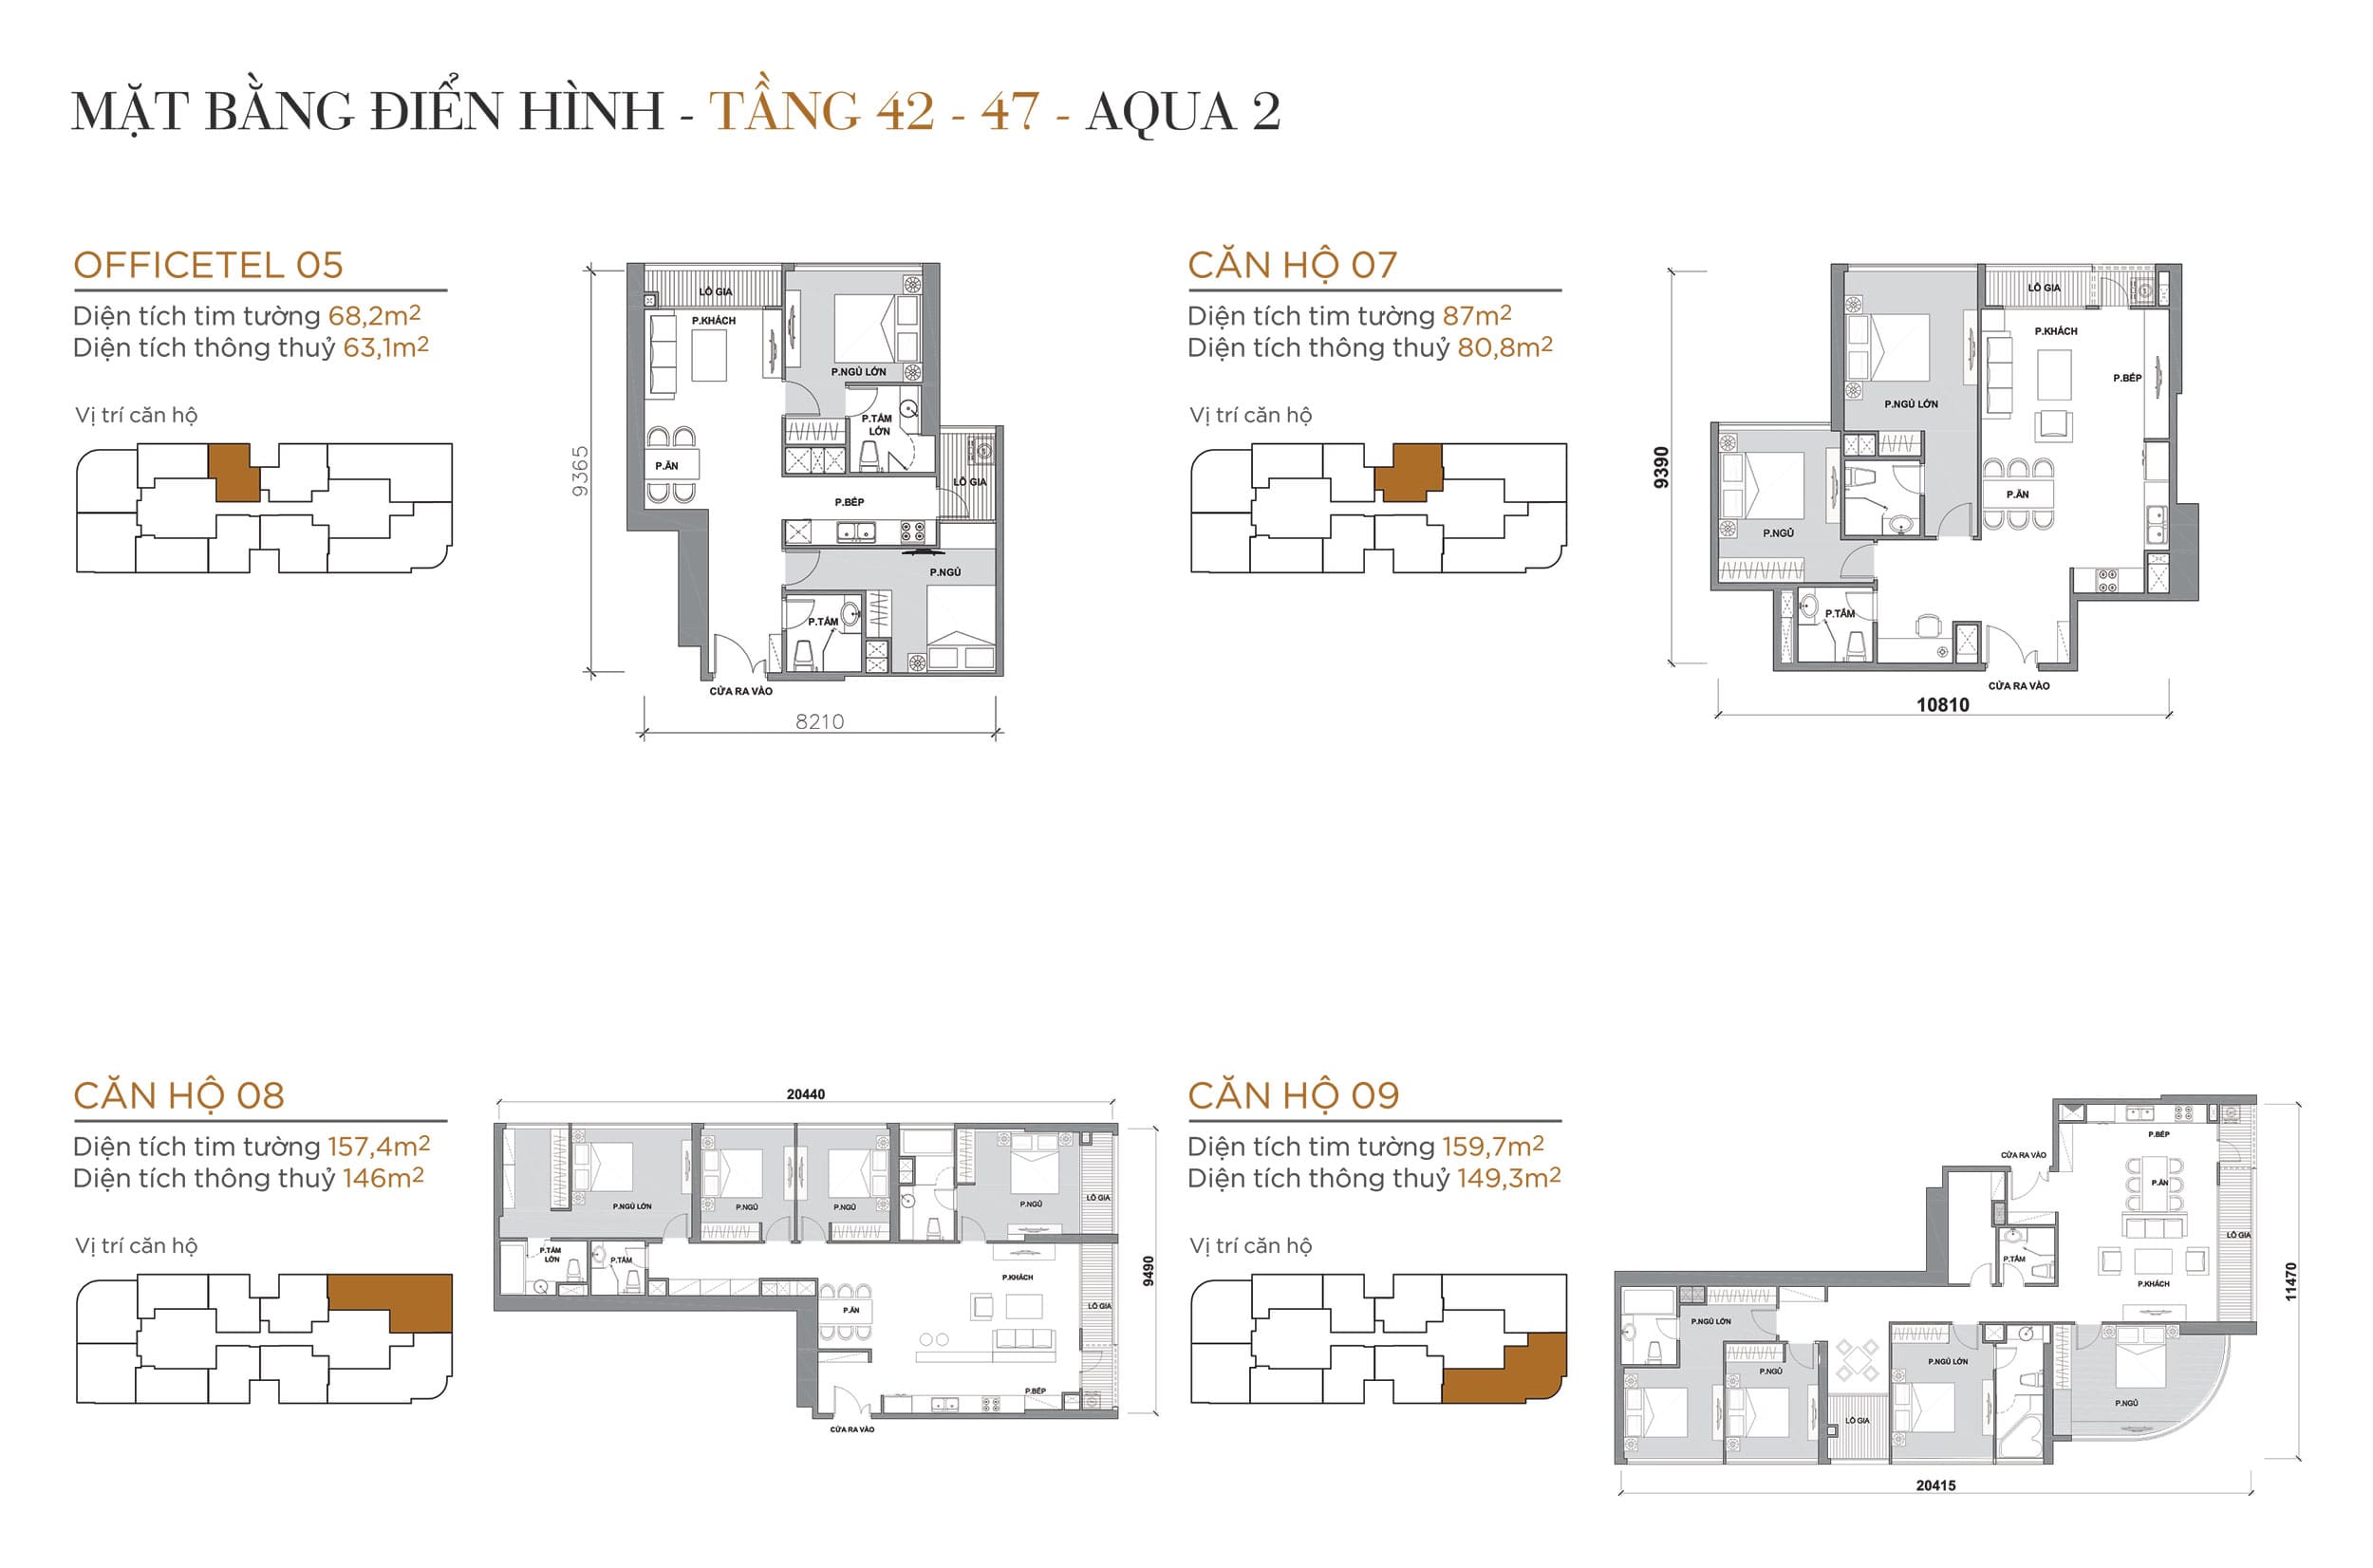 Layout thiết kế điển hình Tầng 42 đến Tầng 47 Tòa Aqua 2 loại Officetel 05, Căn hộ 07, Căn hộ 08, Căn hộ 09.